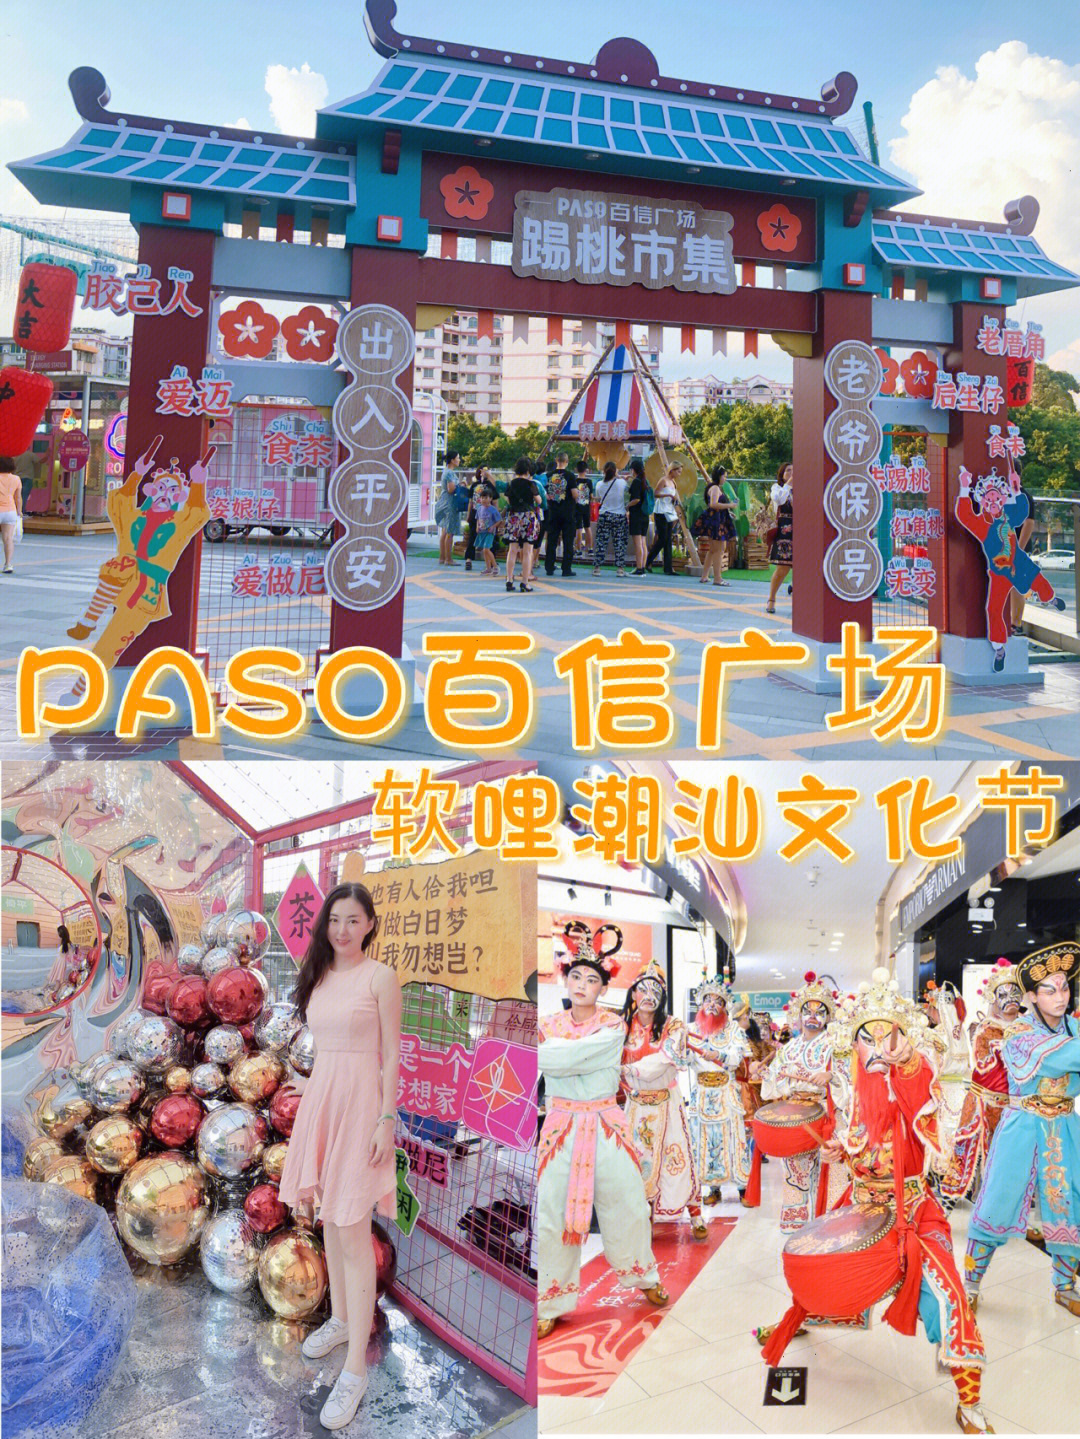 广州文化节2小时图片